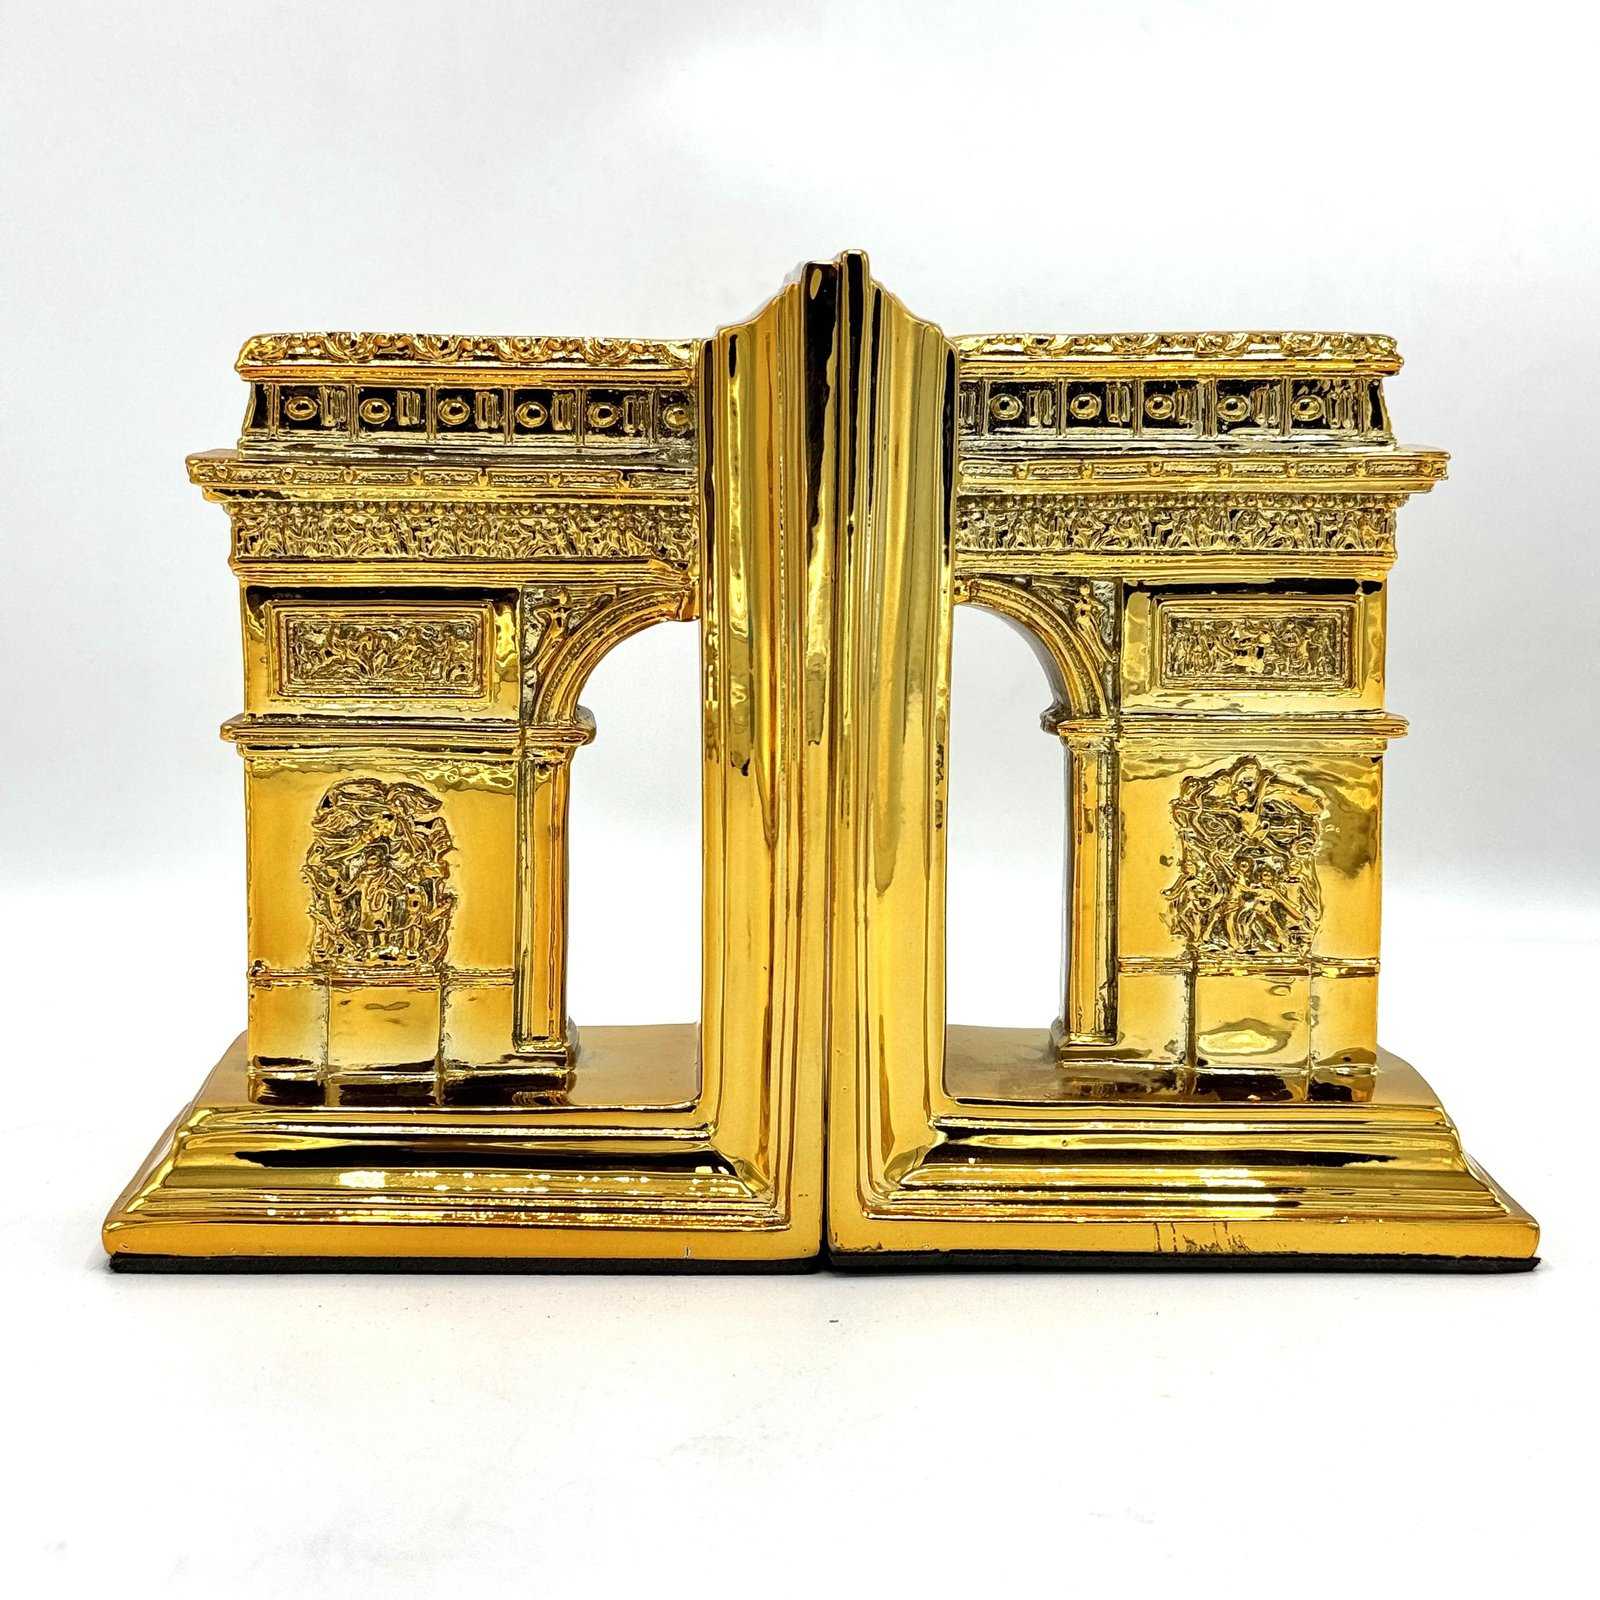 Decor France triumpal Arch Building Bookend Figure ART-N-1976